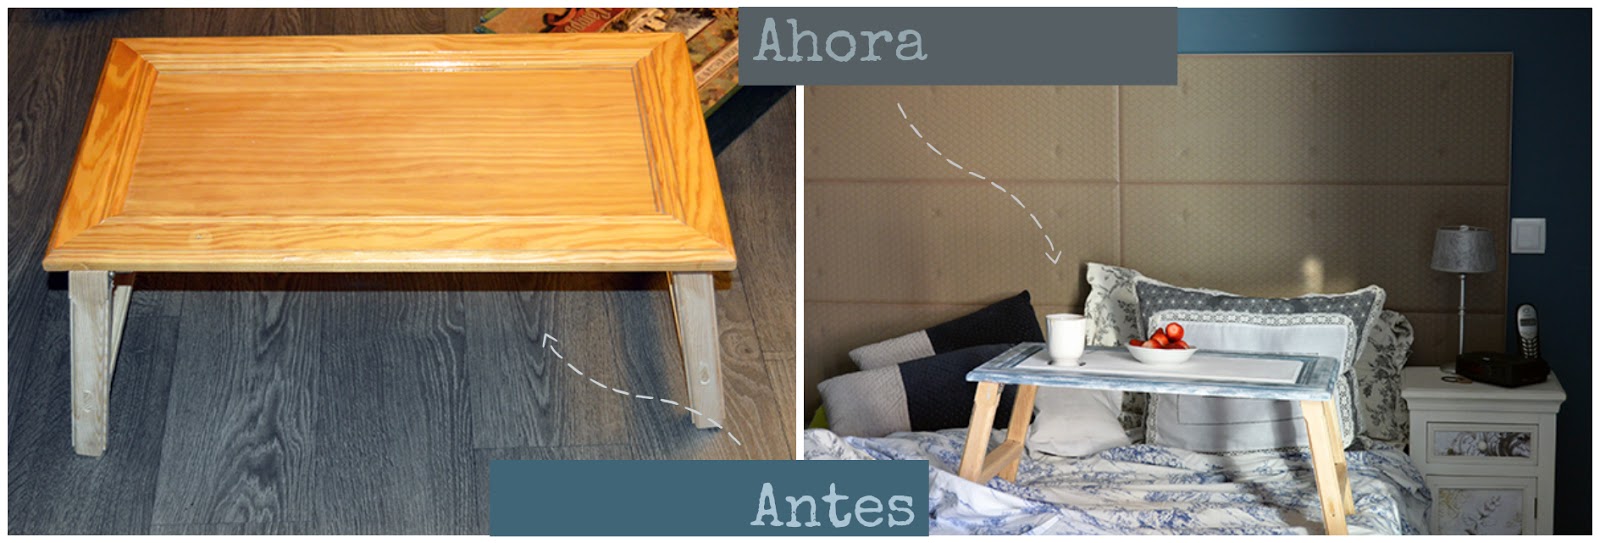 Antes y después mesa madera